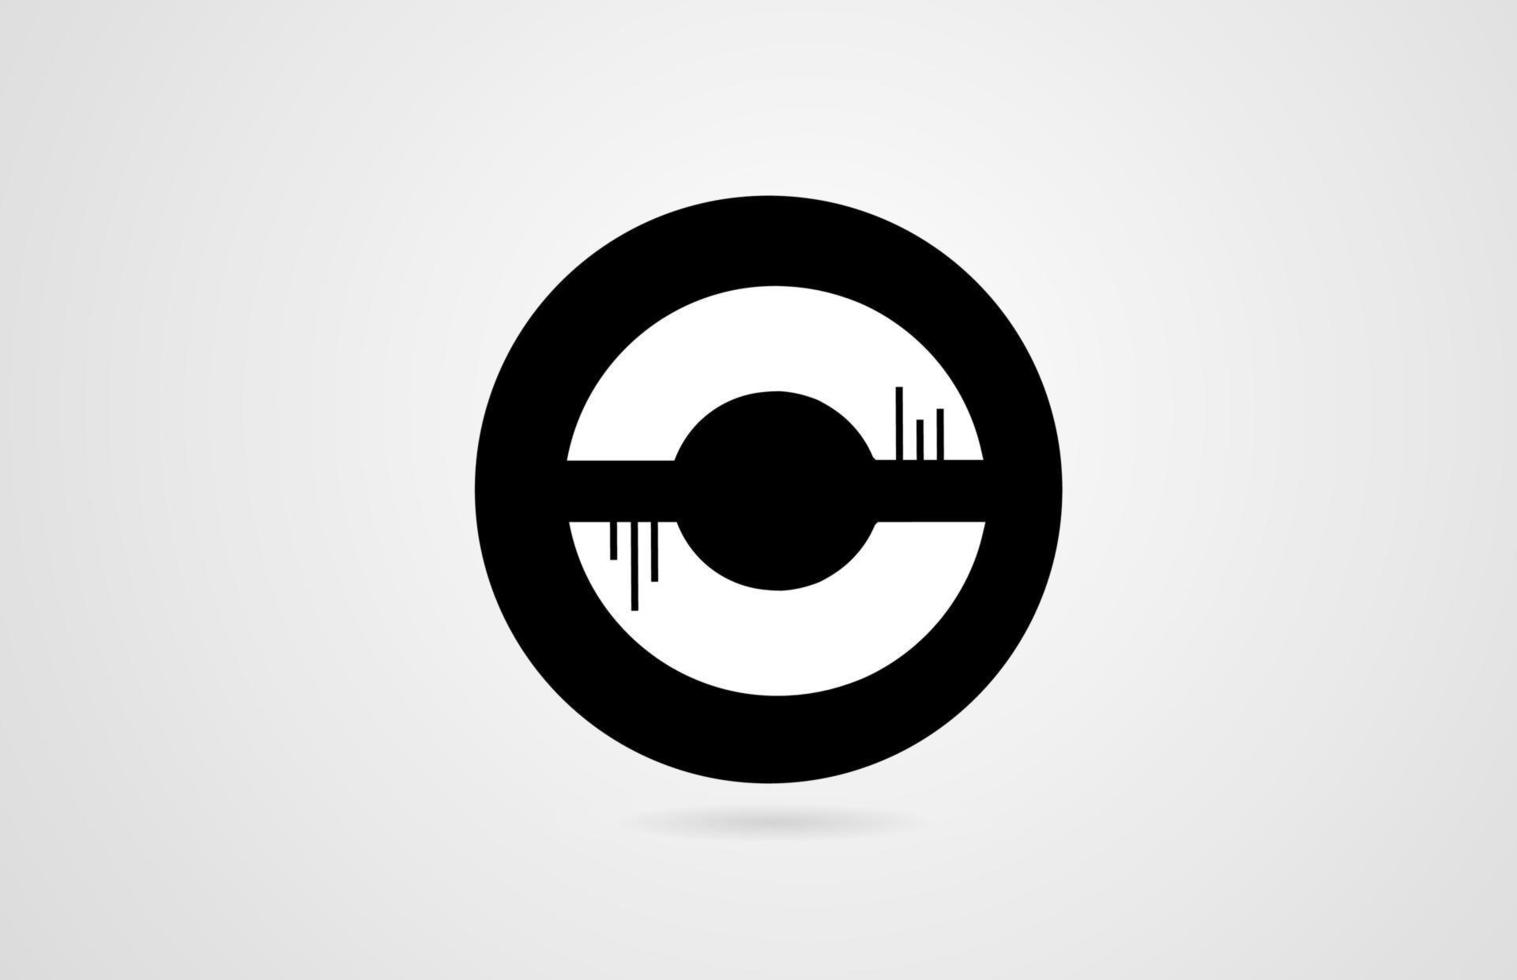 c letra do alfabeto branco círculo preto empresa logotipo ícone design corporativo vetor